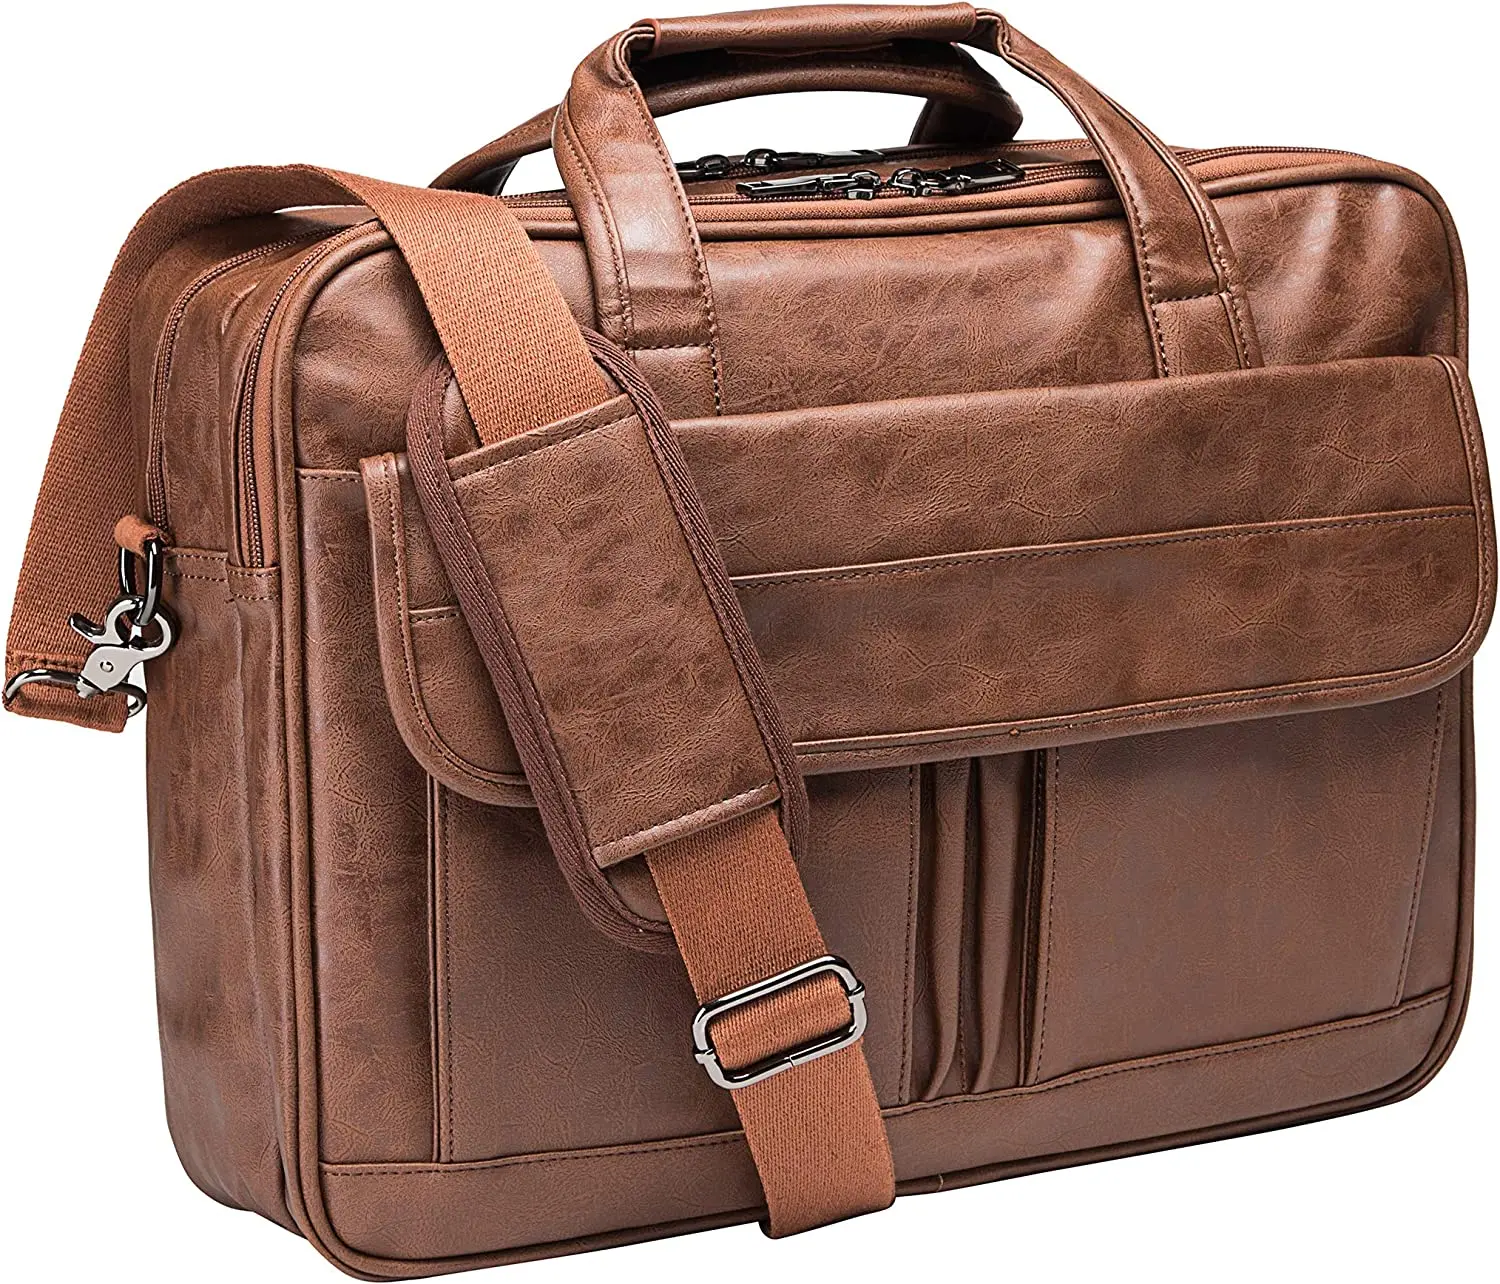 

Men's Laptop Bag, 15.6inch Leather Messenger Bag Waterproof Business Travel Briefcase, Work Computer Bag Satchel Husband Gift